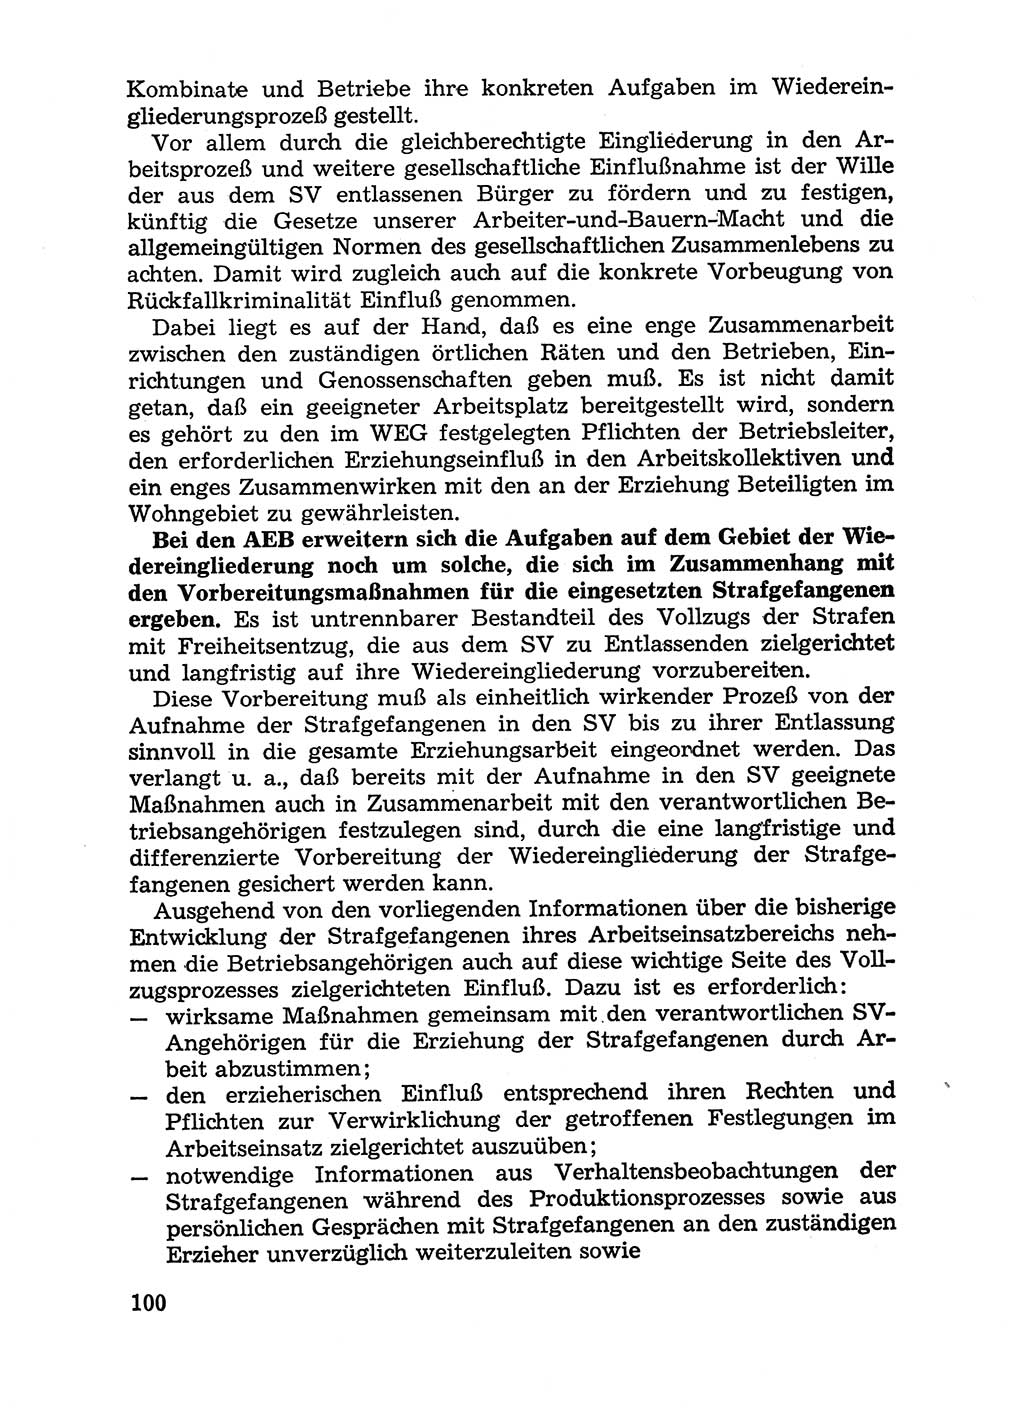 Handbuch für Betriebsangehörige, Abteilung Strafvollzug (SV) [Ministerium des Innern (MdI) Deutsche Demokratische Republik (DDR)] 1981, Seite 100 (Hb. BA Abt. SV MdI DDR 1981, S. 100)